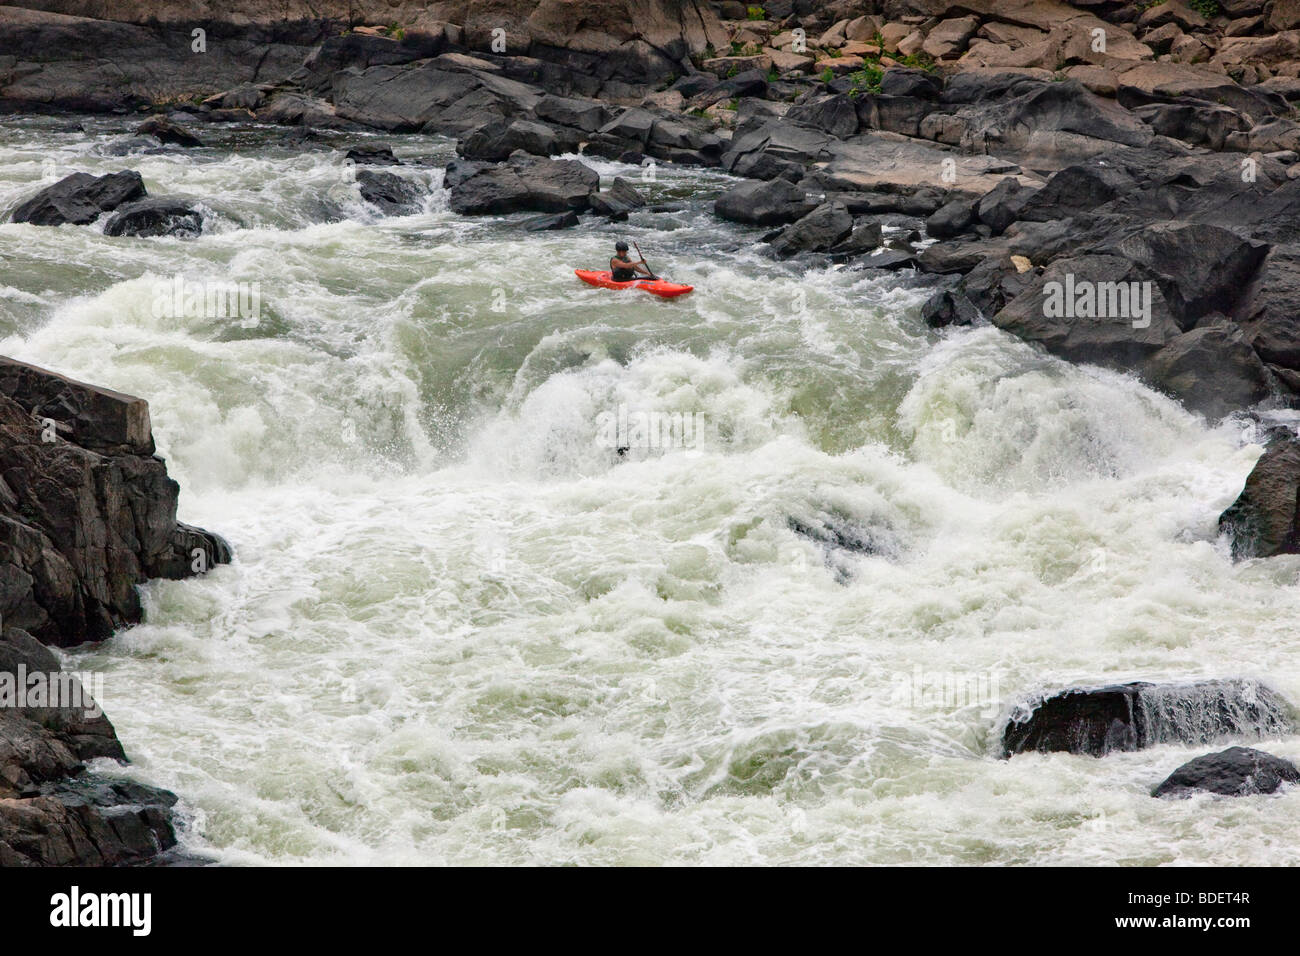 L'exécution de la Great Falls de la Rivière Potomac. Ils sont les plus raides et les plus spectaculaires de la ligne de chute rapides de toute rivière de l'US Banque D'Images